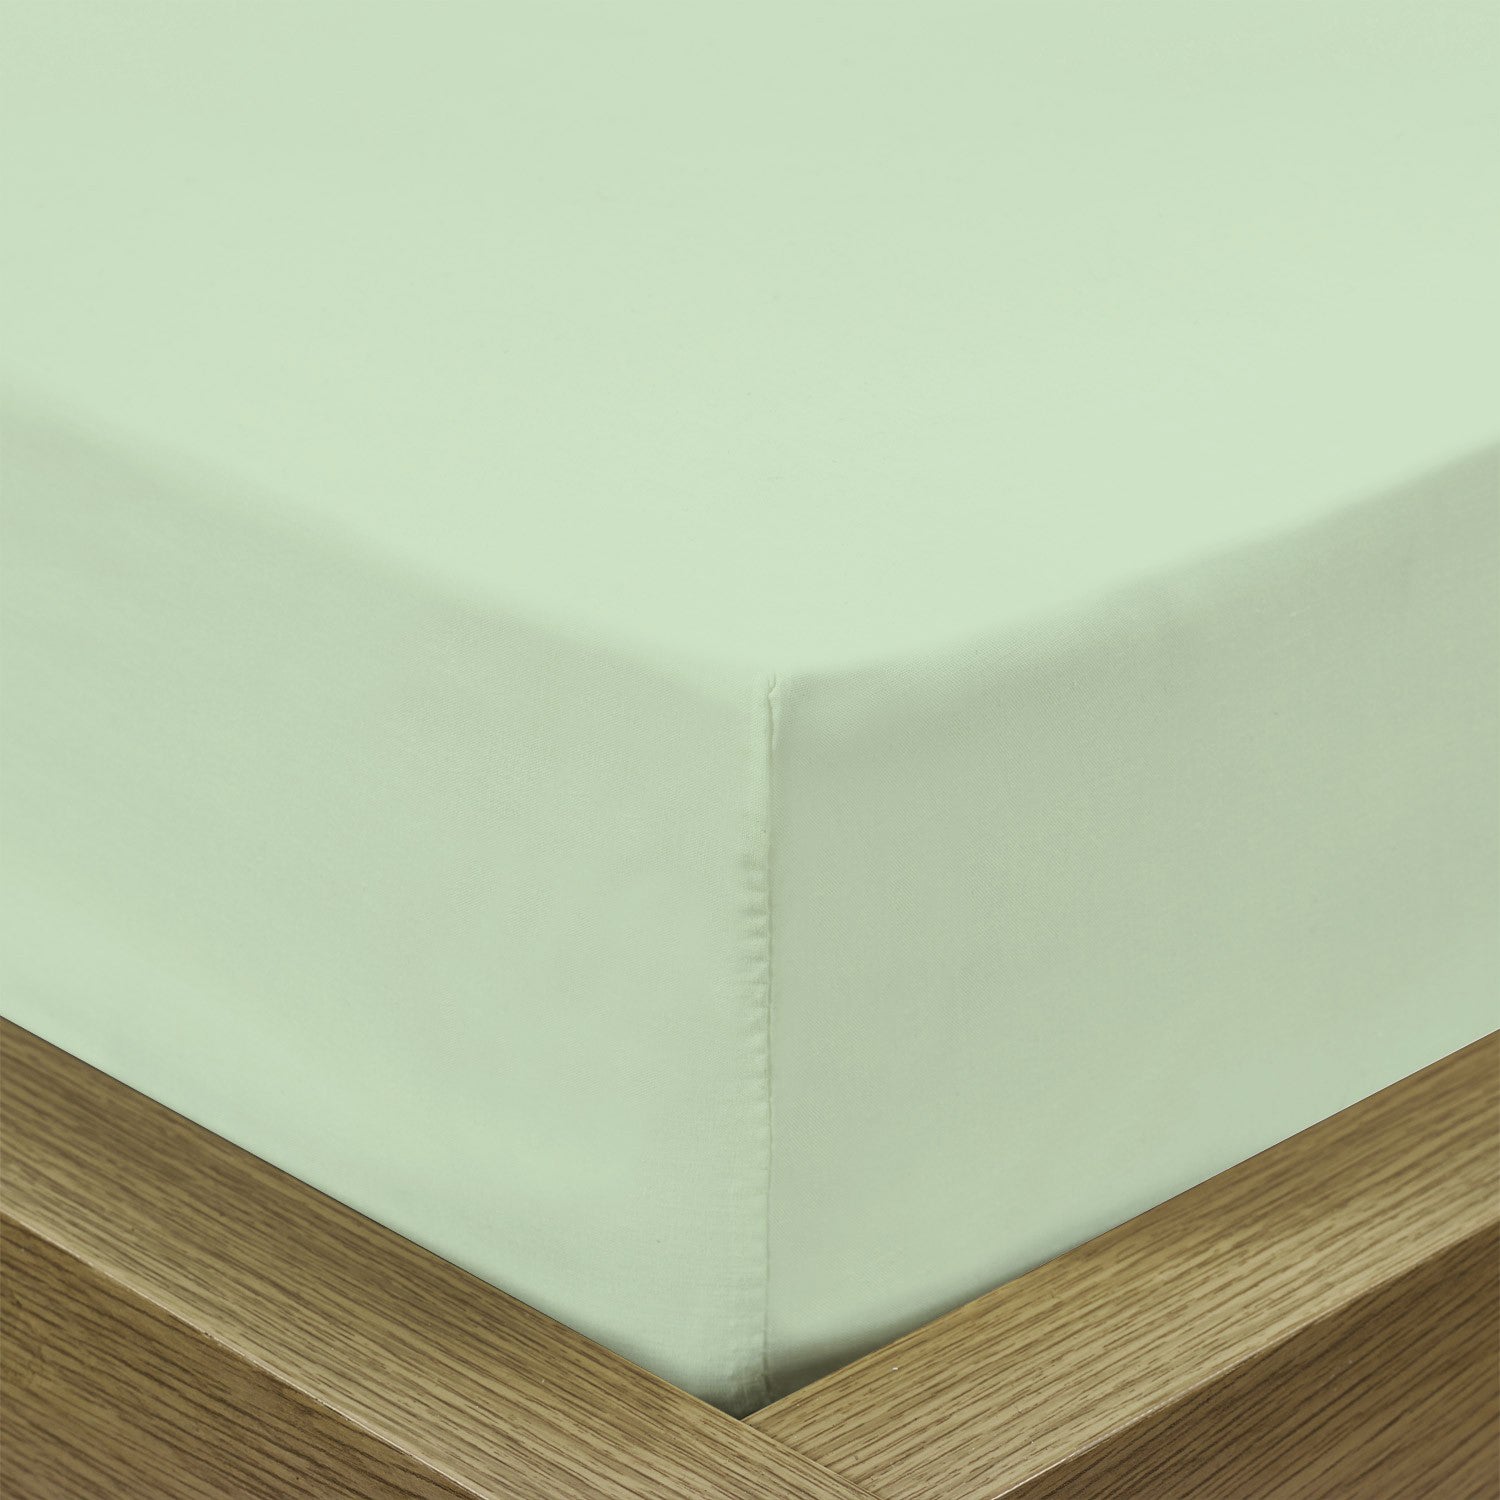 Rest Super Soft Single Flat Sheet 160x220cm-Mint Green - Cotton Home